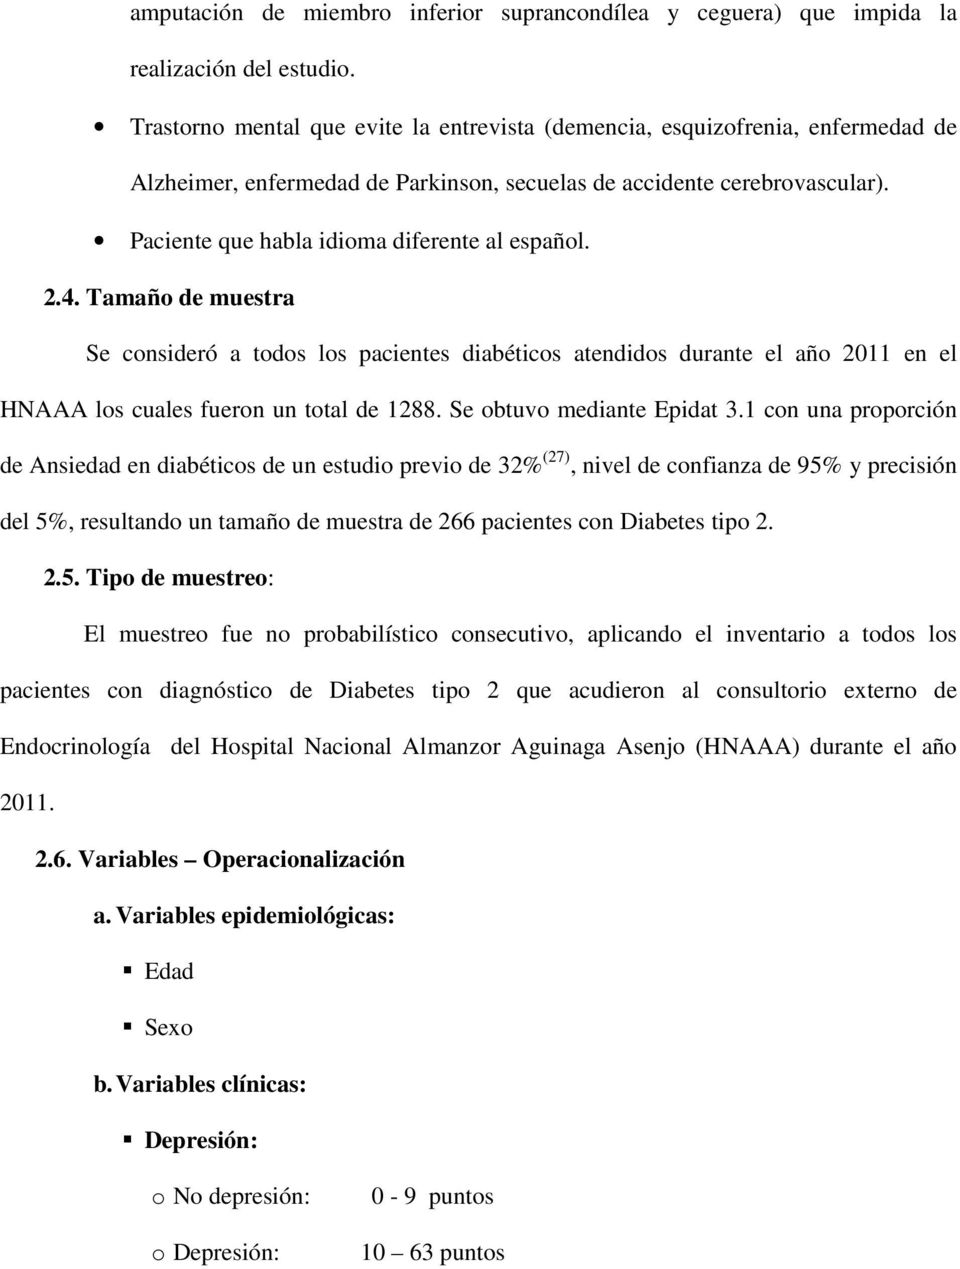 Paciente que habla idioma diferente al español. 2.4. Tamaño de muestra Se consideró a todos los pacientes diabéticos atendidos durante el año 2011 en el HNAAA los cuales fueron un total de 1288.